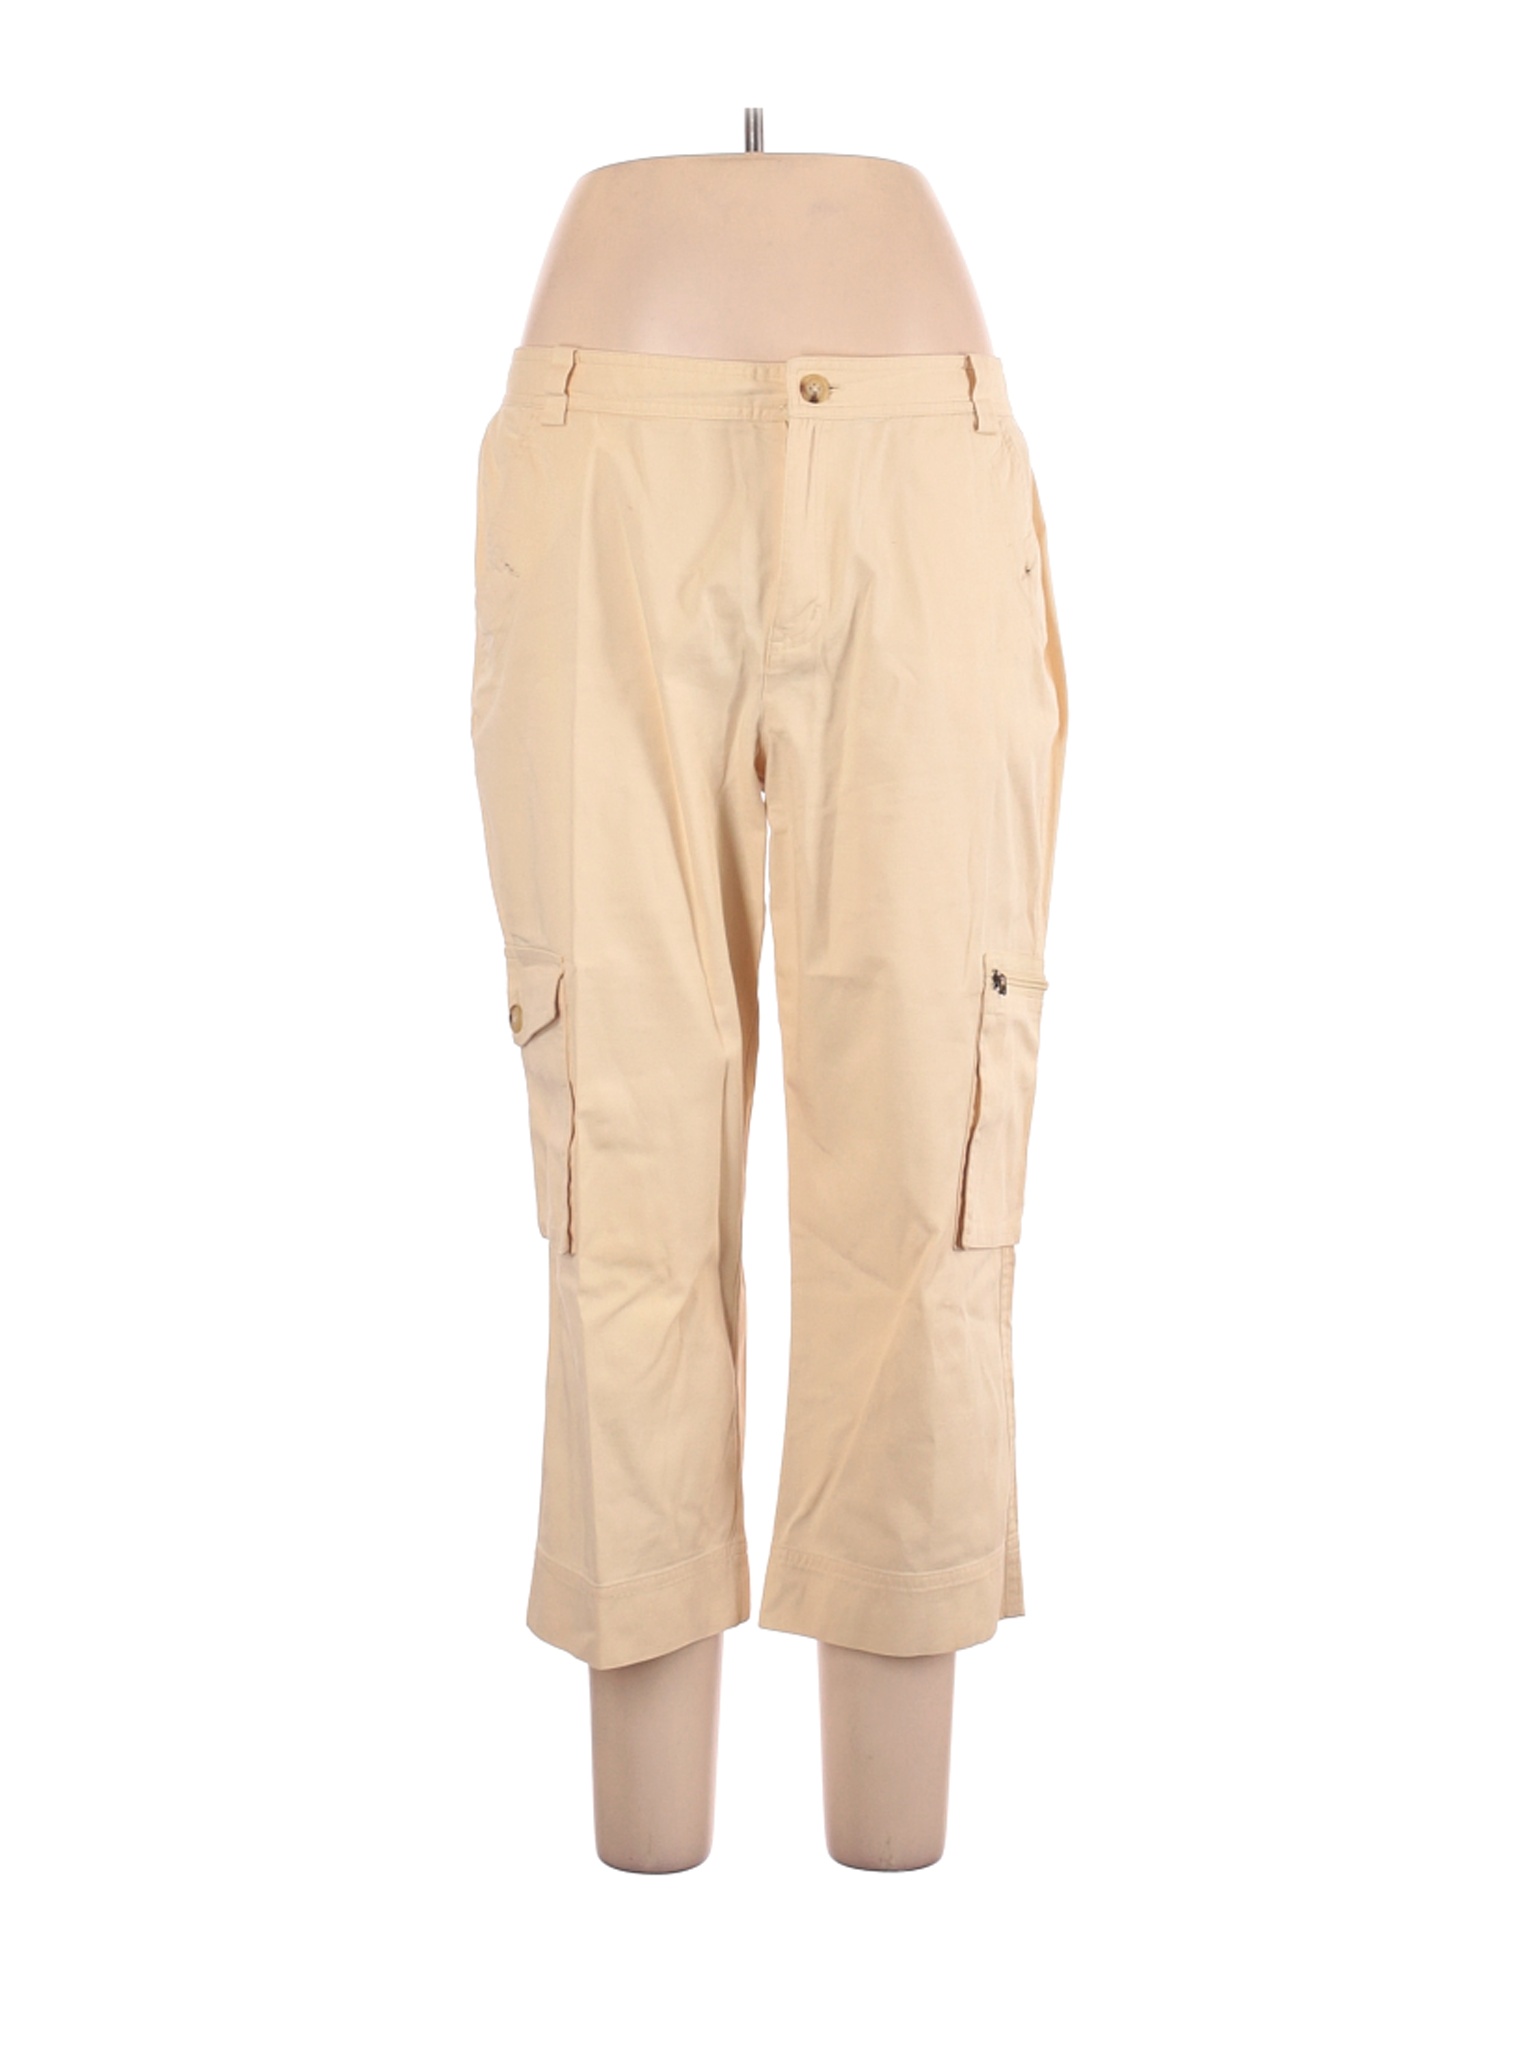 Lauren by Ralph Lauren Women Brown Cargo Pants 12 | eBay